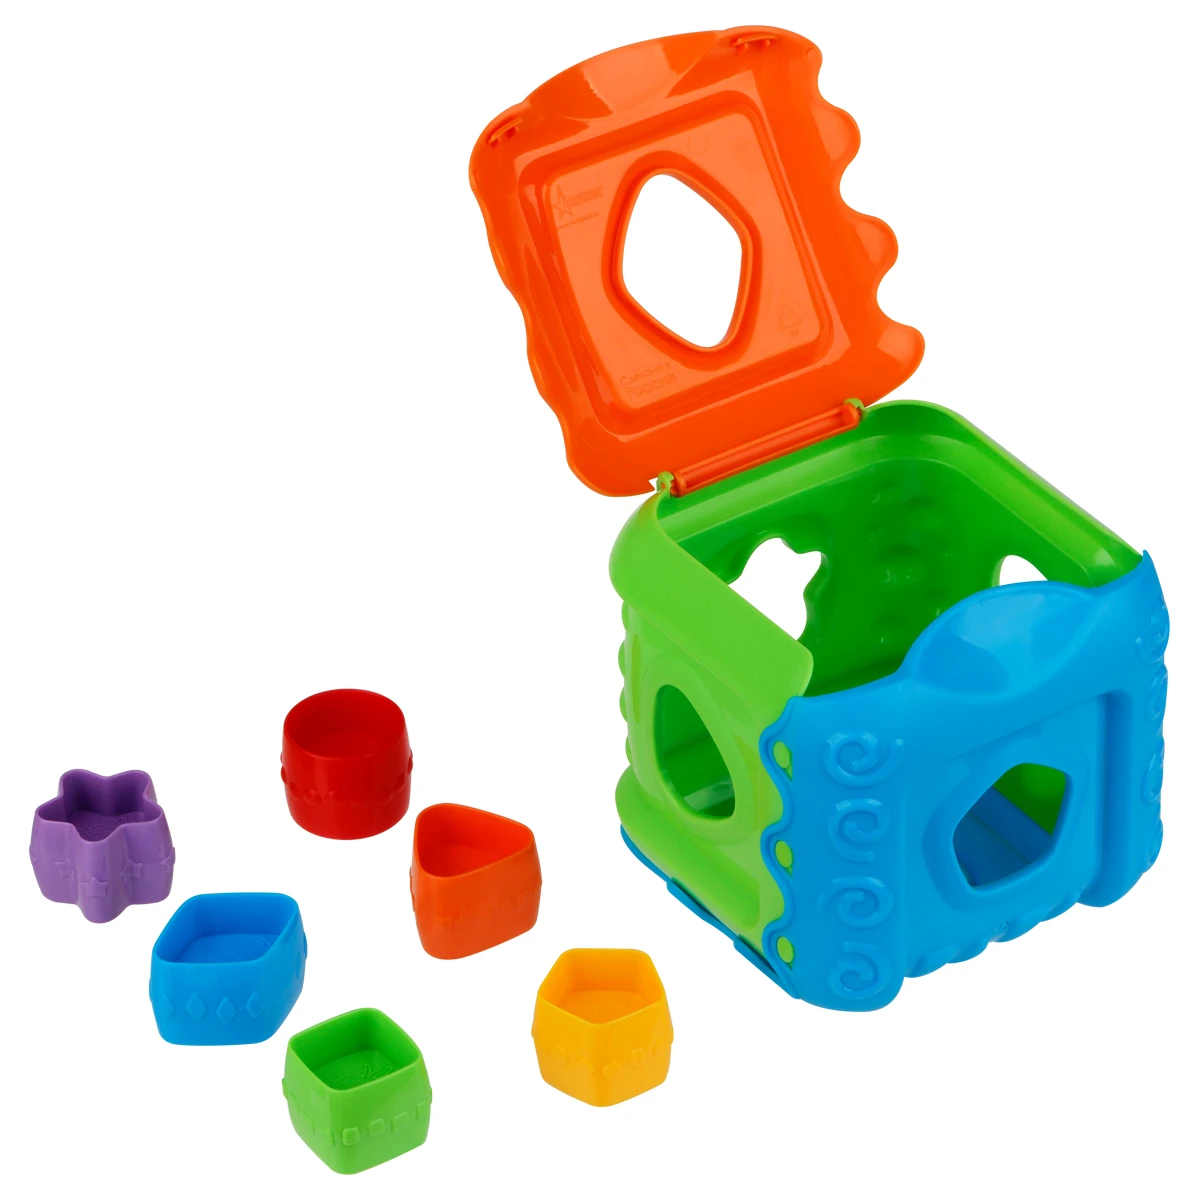 Дидактическия игрушка ТРИ СОВЫ сортер "Кубик", 7 предметов (кубик, 6